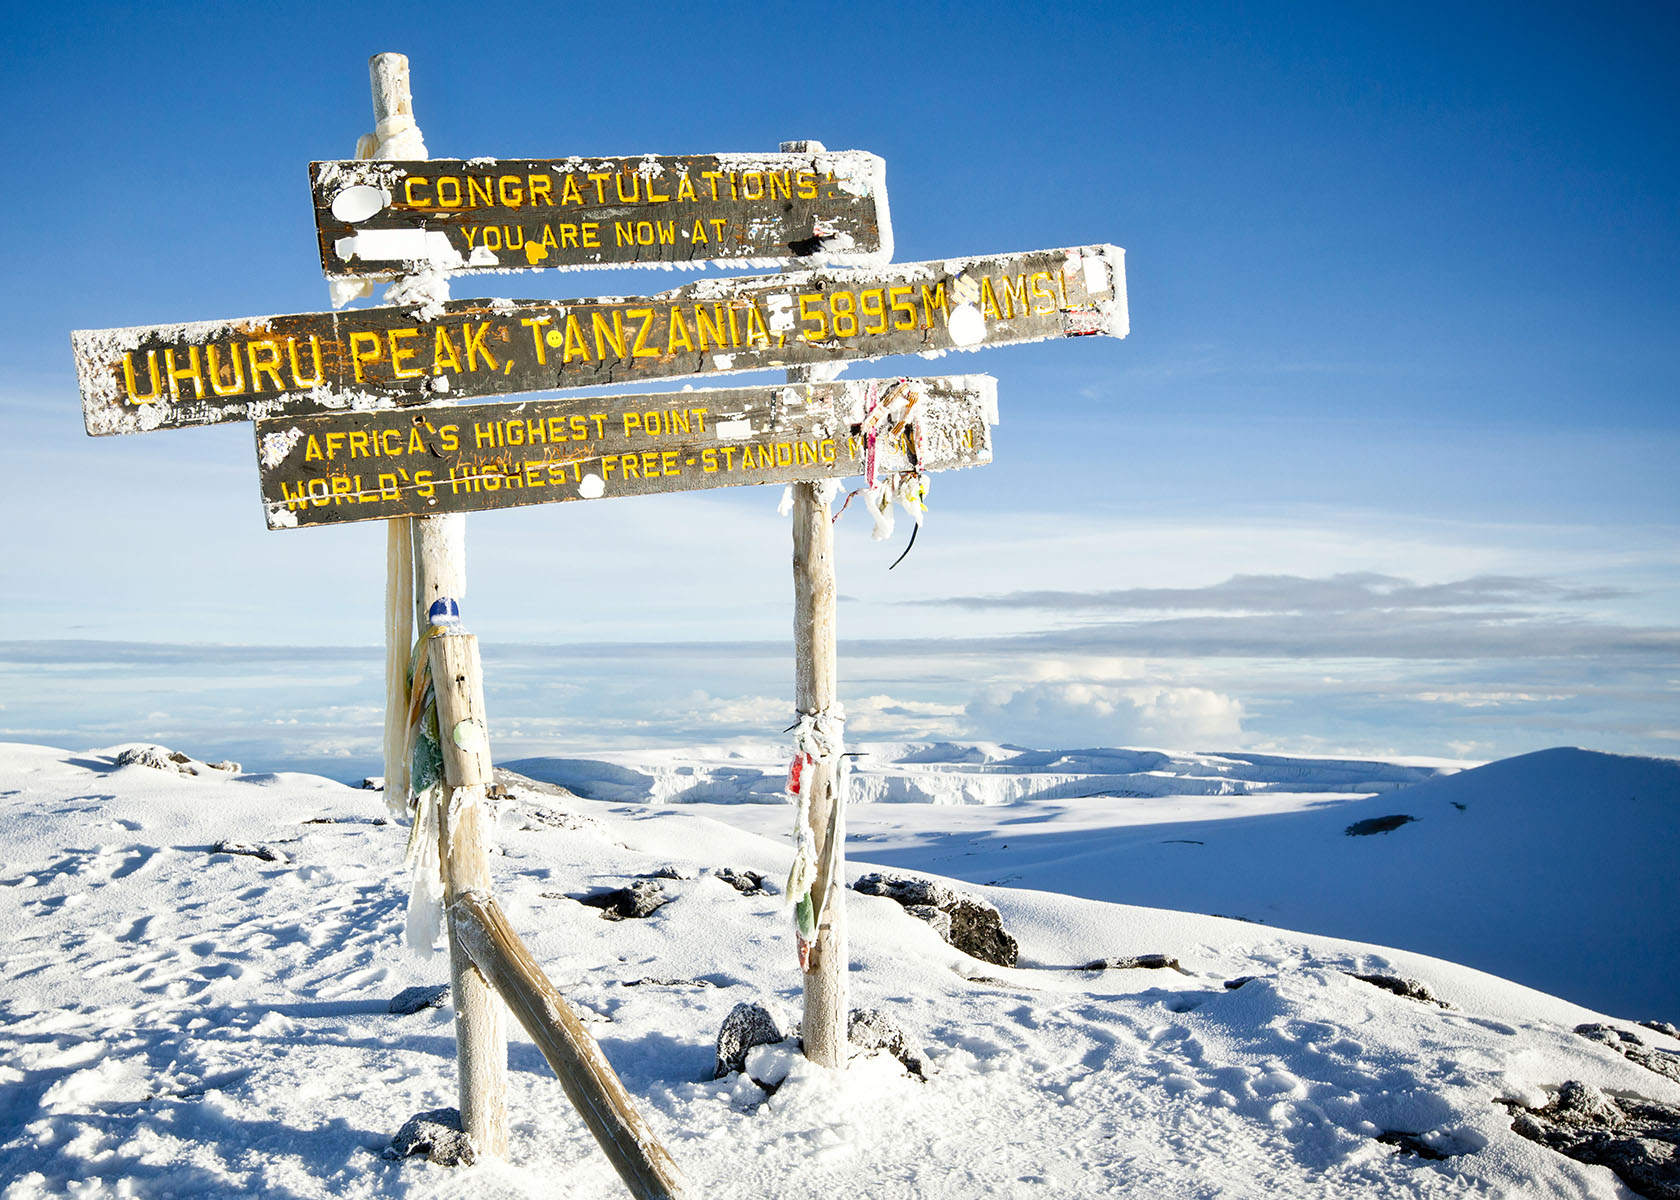 Mount Meru and Kilimanjaro Climbing